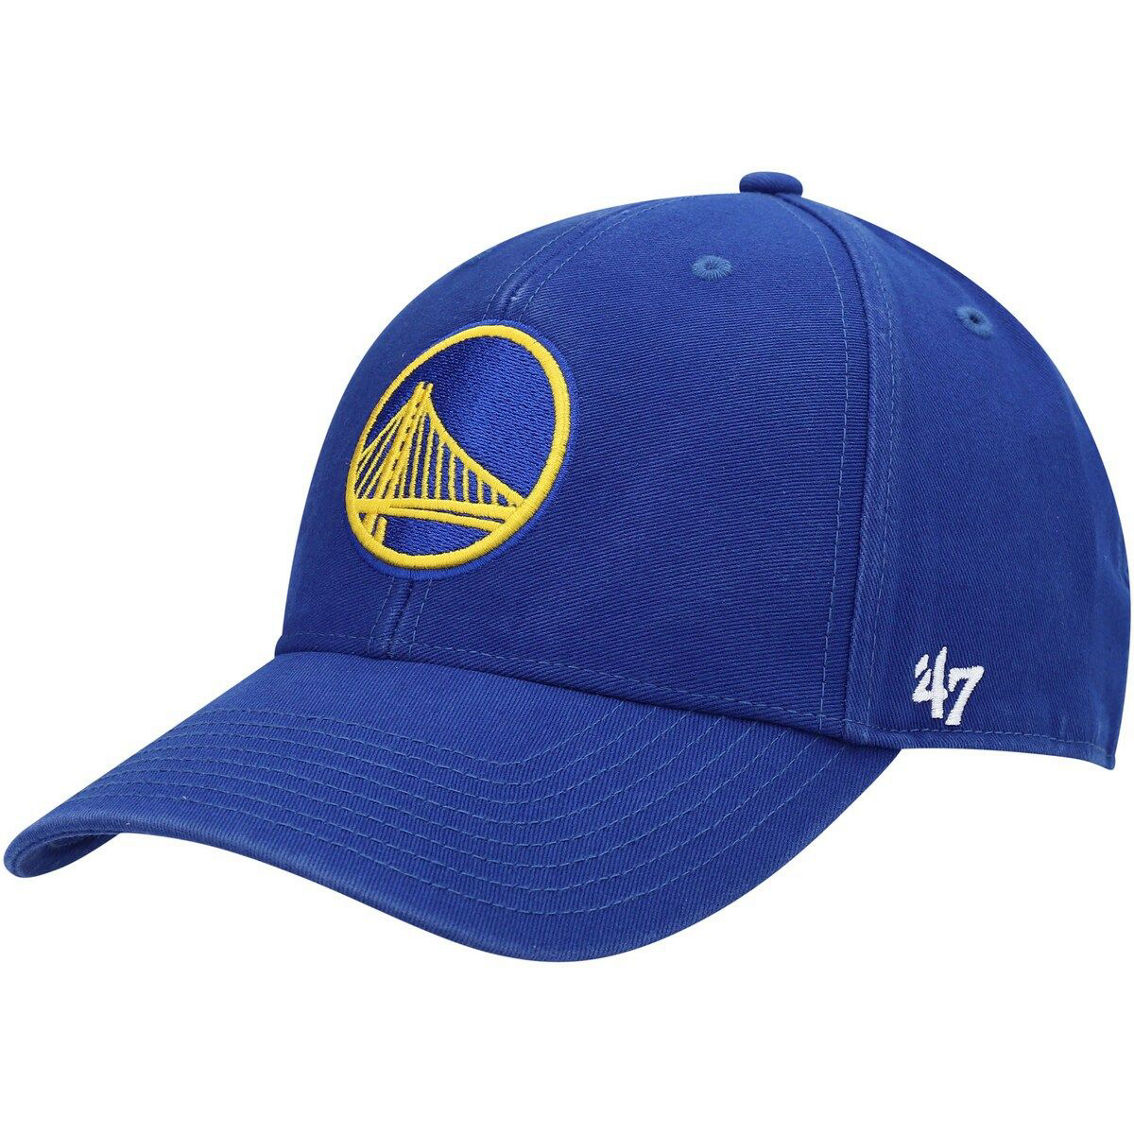 '47 Men's Royal Golden State Warriors MVP Legend Adjustable Hat - Image 2 of 4